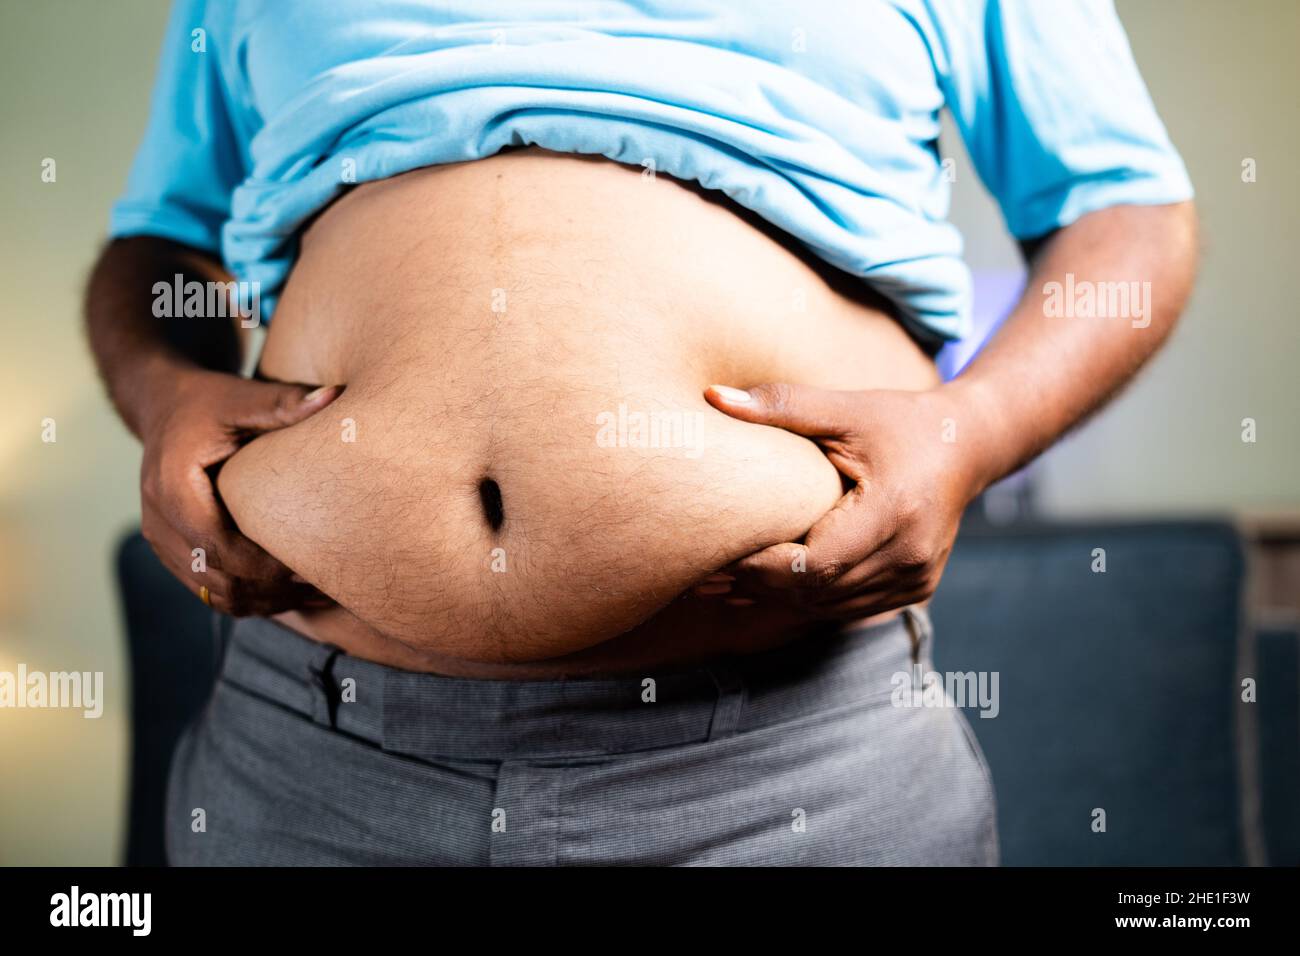 Unkenntlich Fat man Kontrolle durch Schütteln Bauchfett - Konzept der ungesunden Lebensweise, Messung von Übergewicht Körperfett Stockfoto